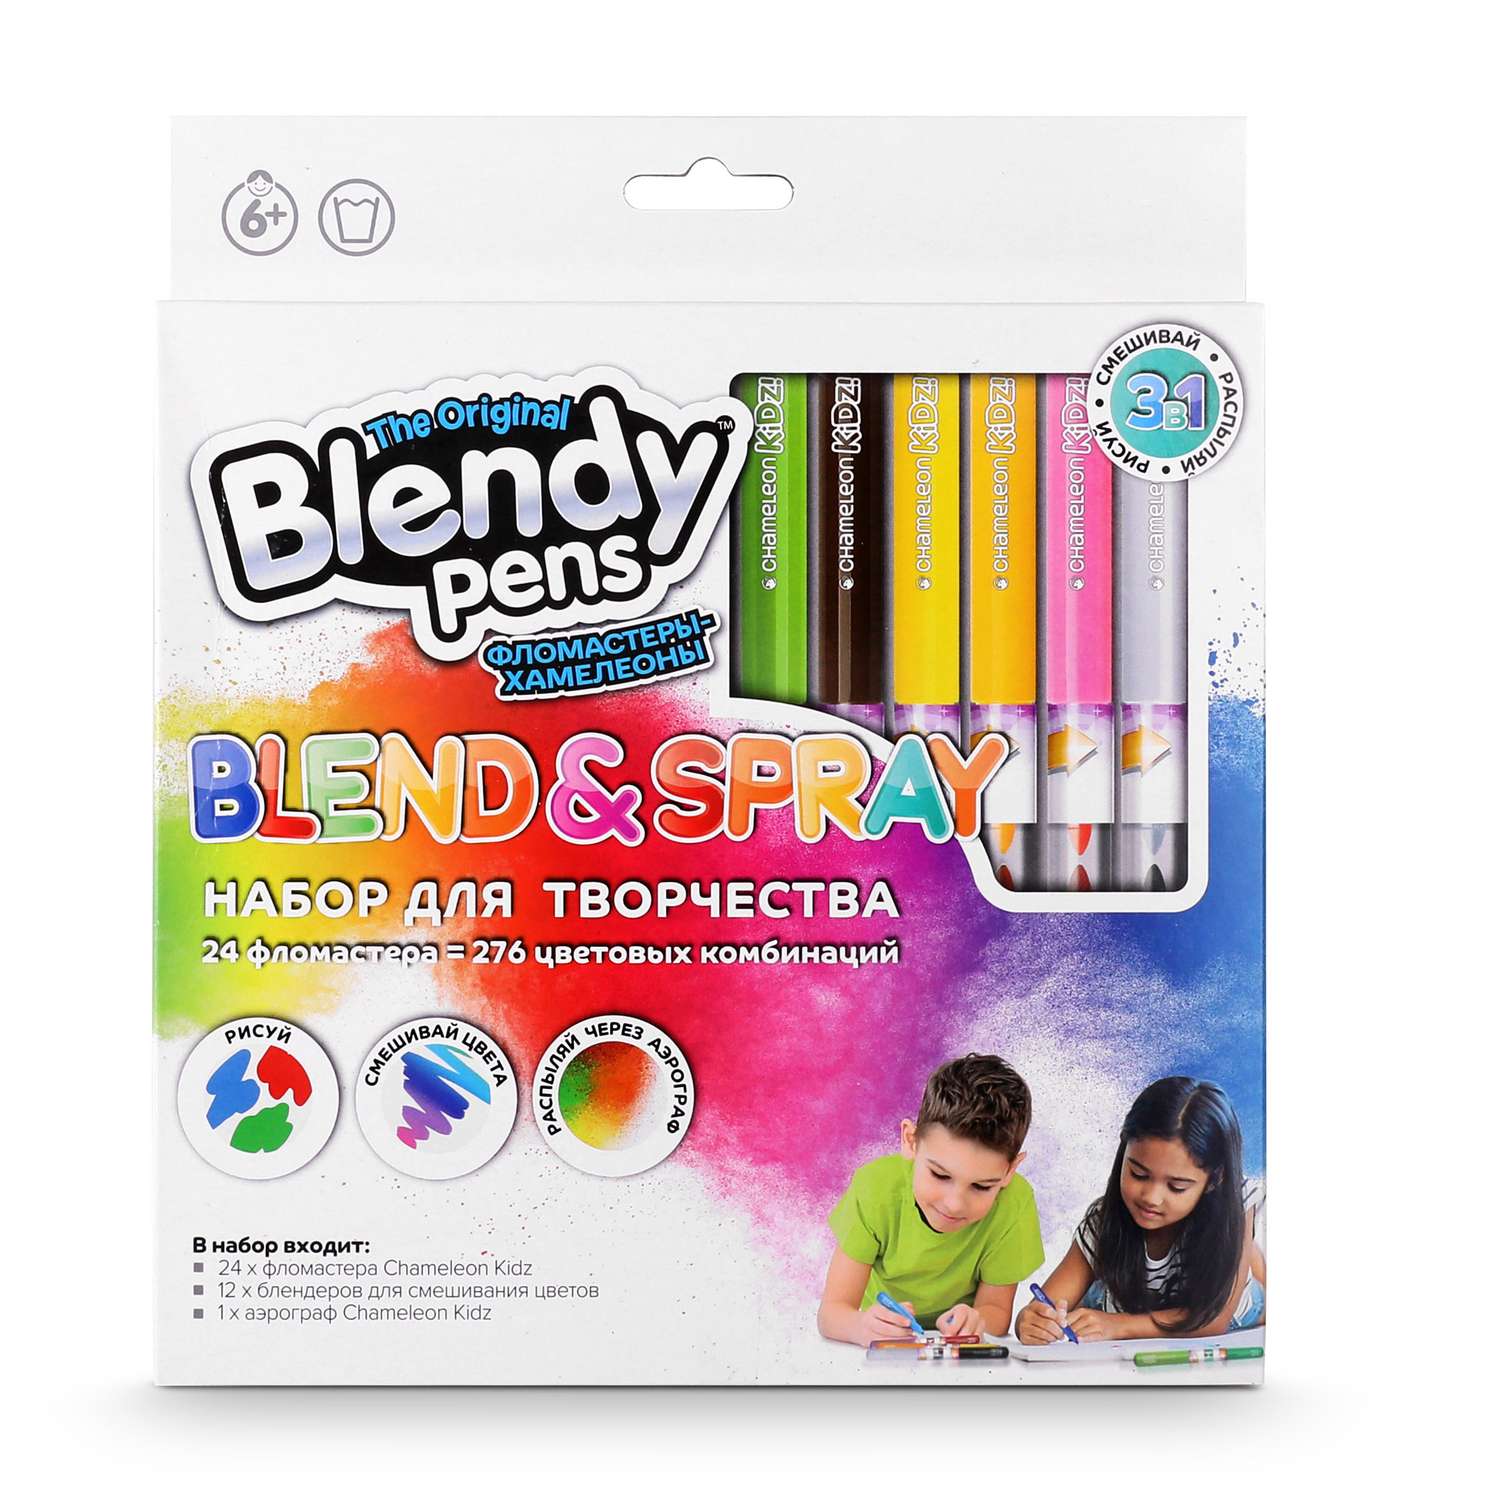 Набор для творчества Blendy pens Фломастеры хамелеоны 24 штуки с аэрографом - фото 1